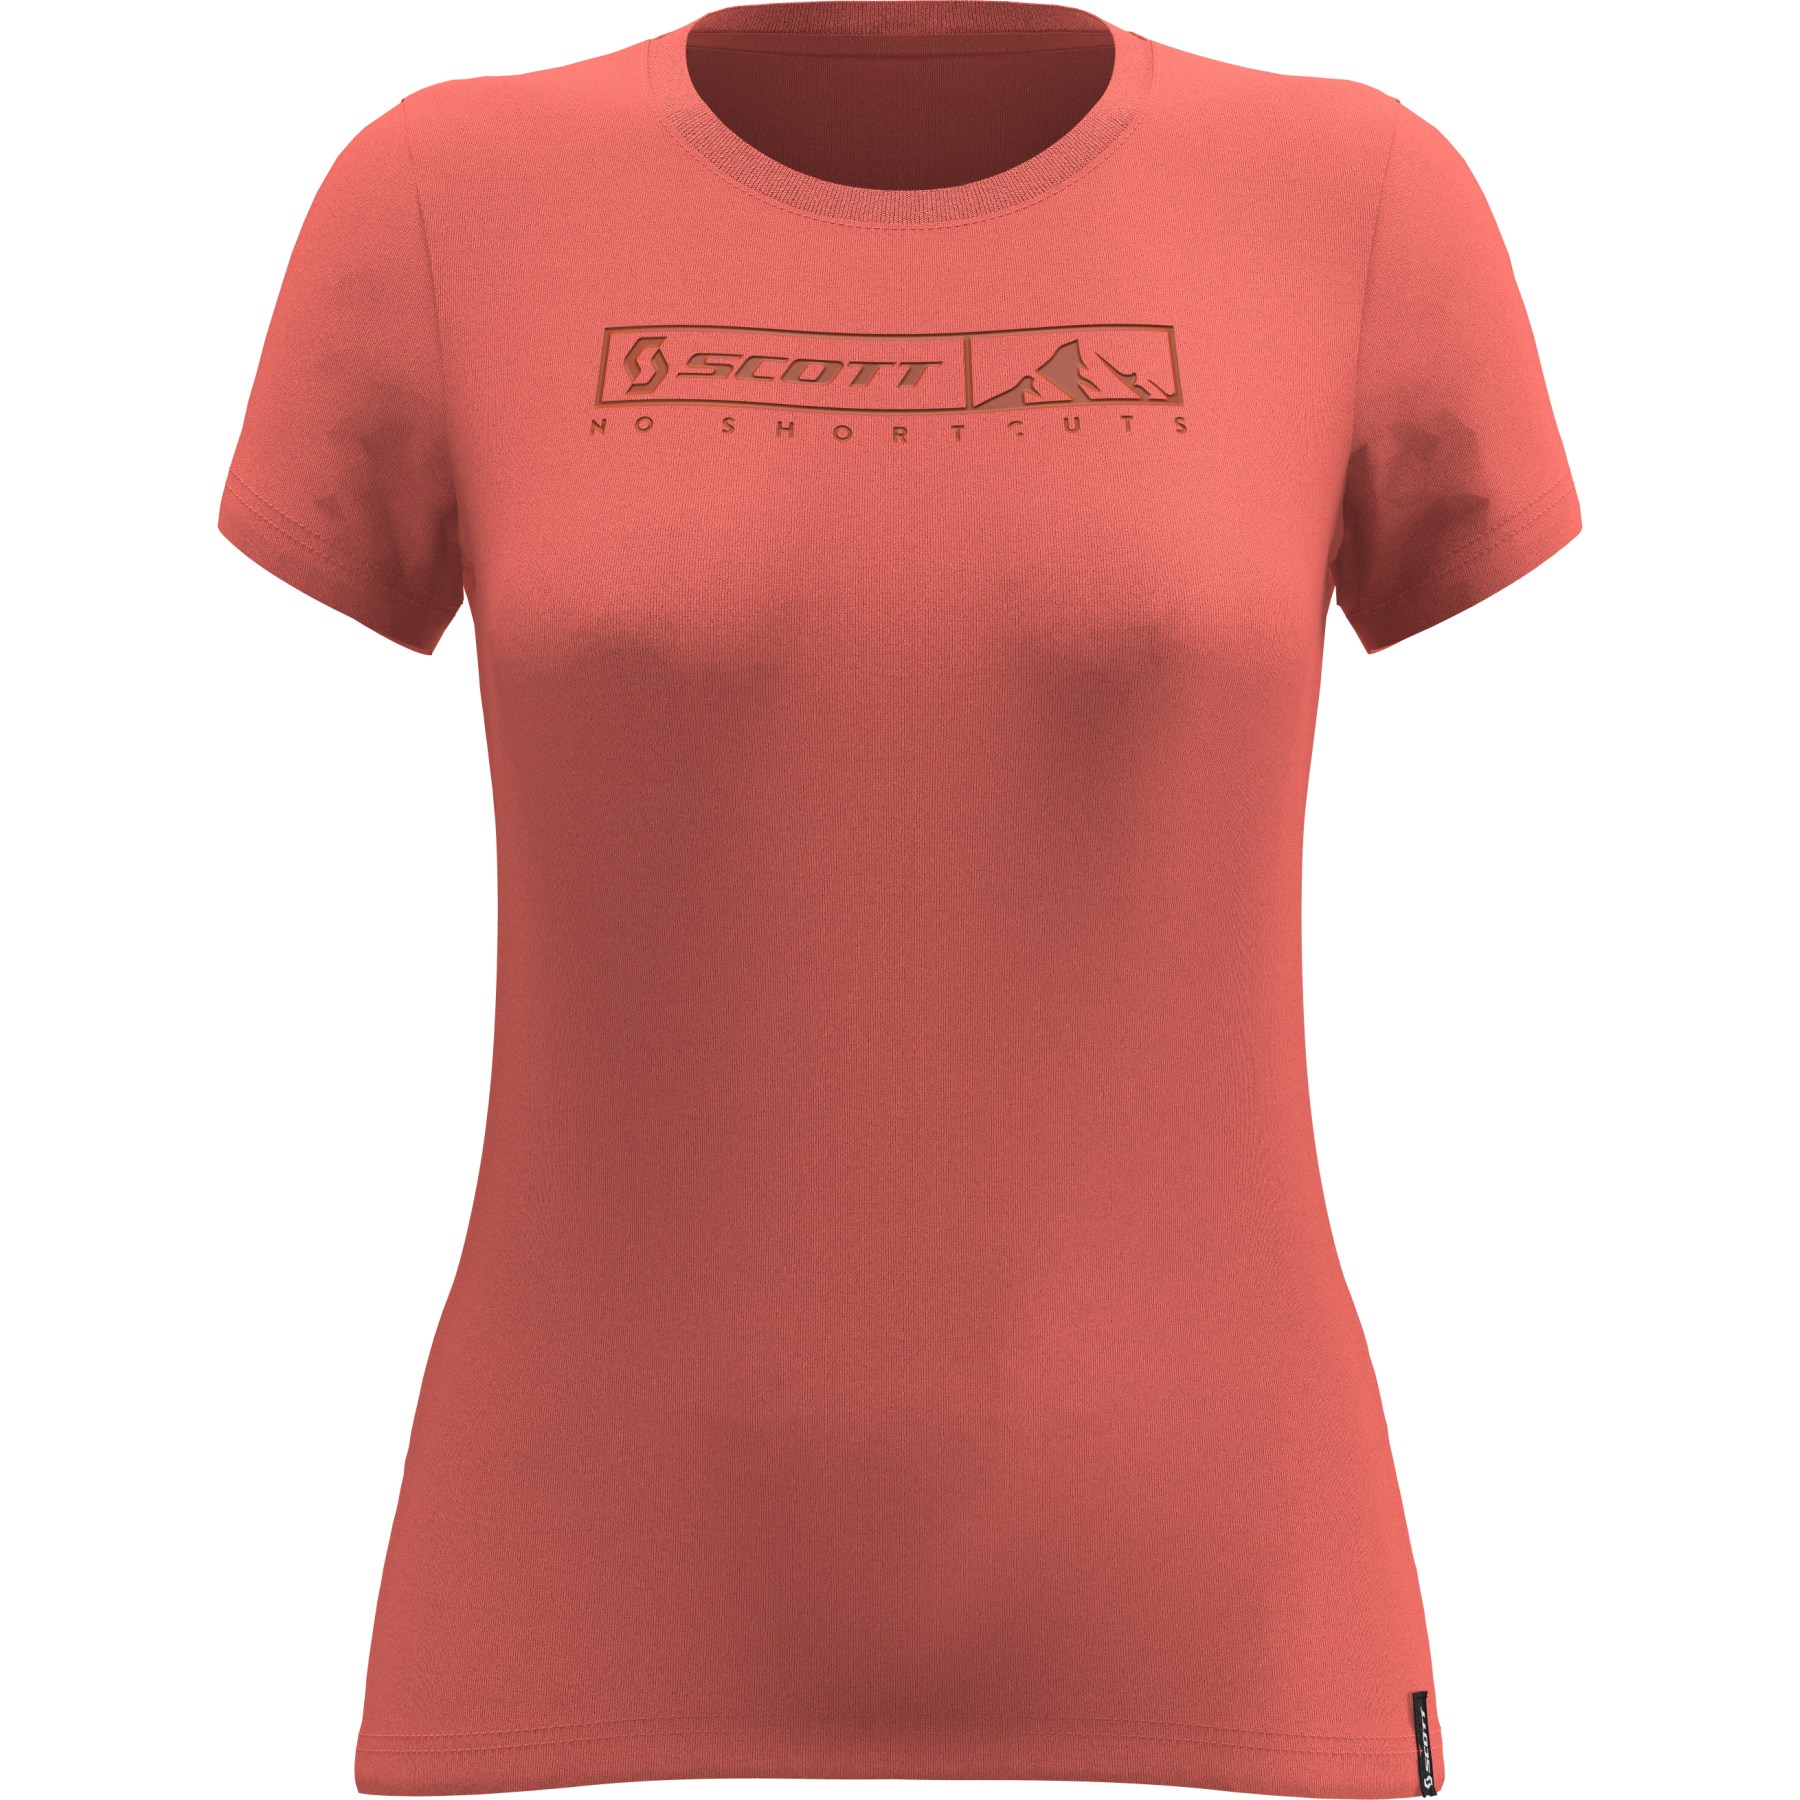 Bild von SCOTT 10 No Shortcuts T-Shirt Damen - brick red